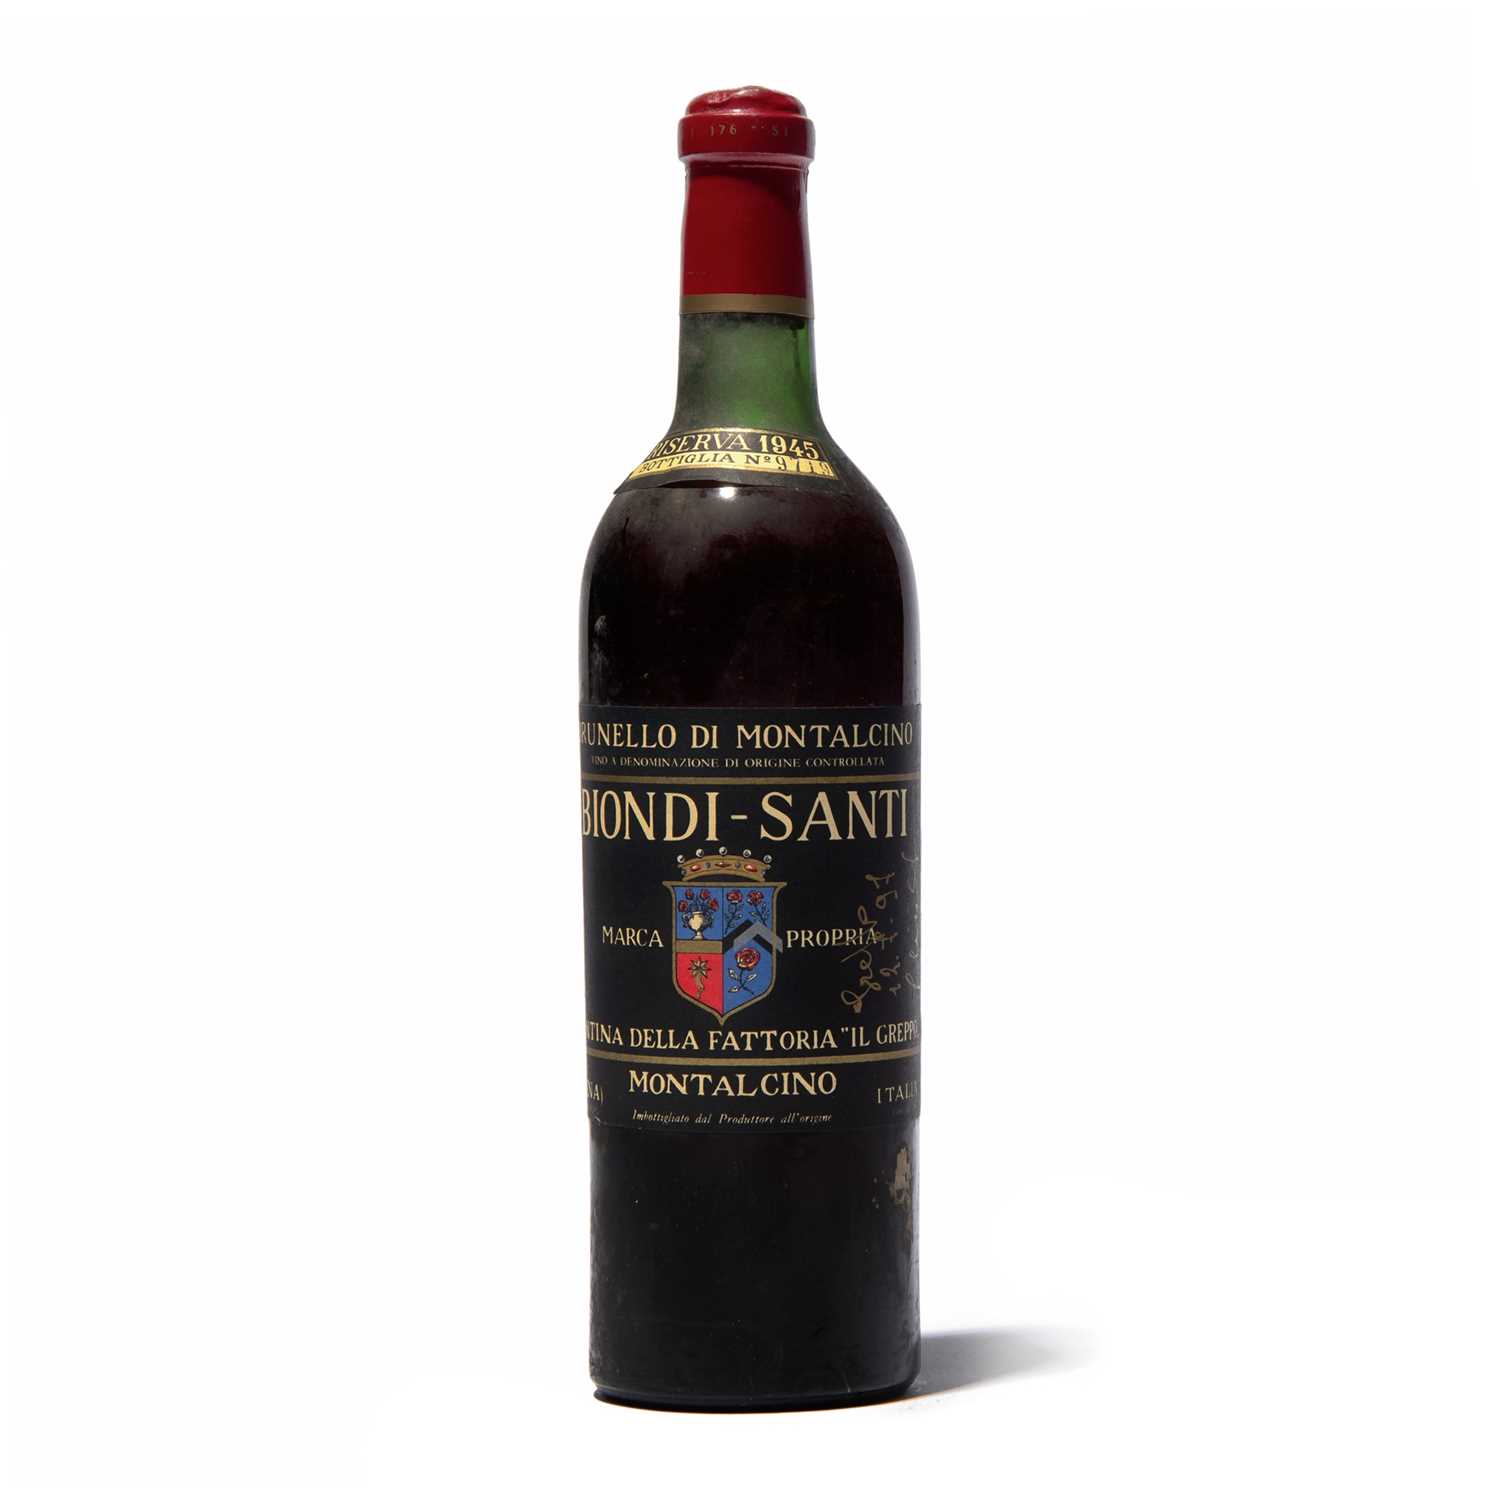 1 bottle 1945 Brunello di Montalcino Riserva Biondi-Santi